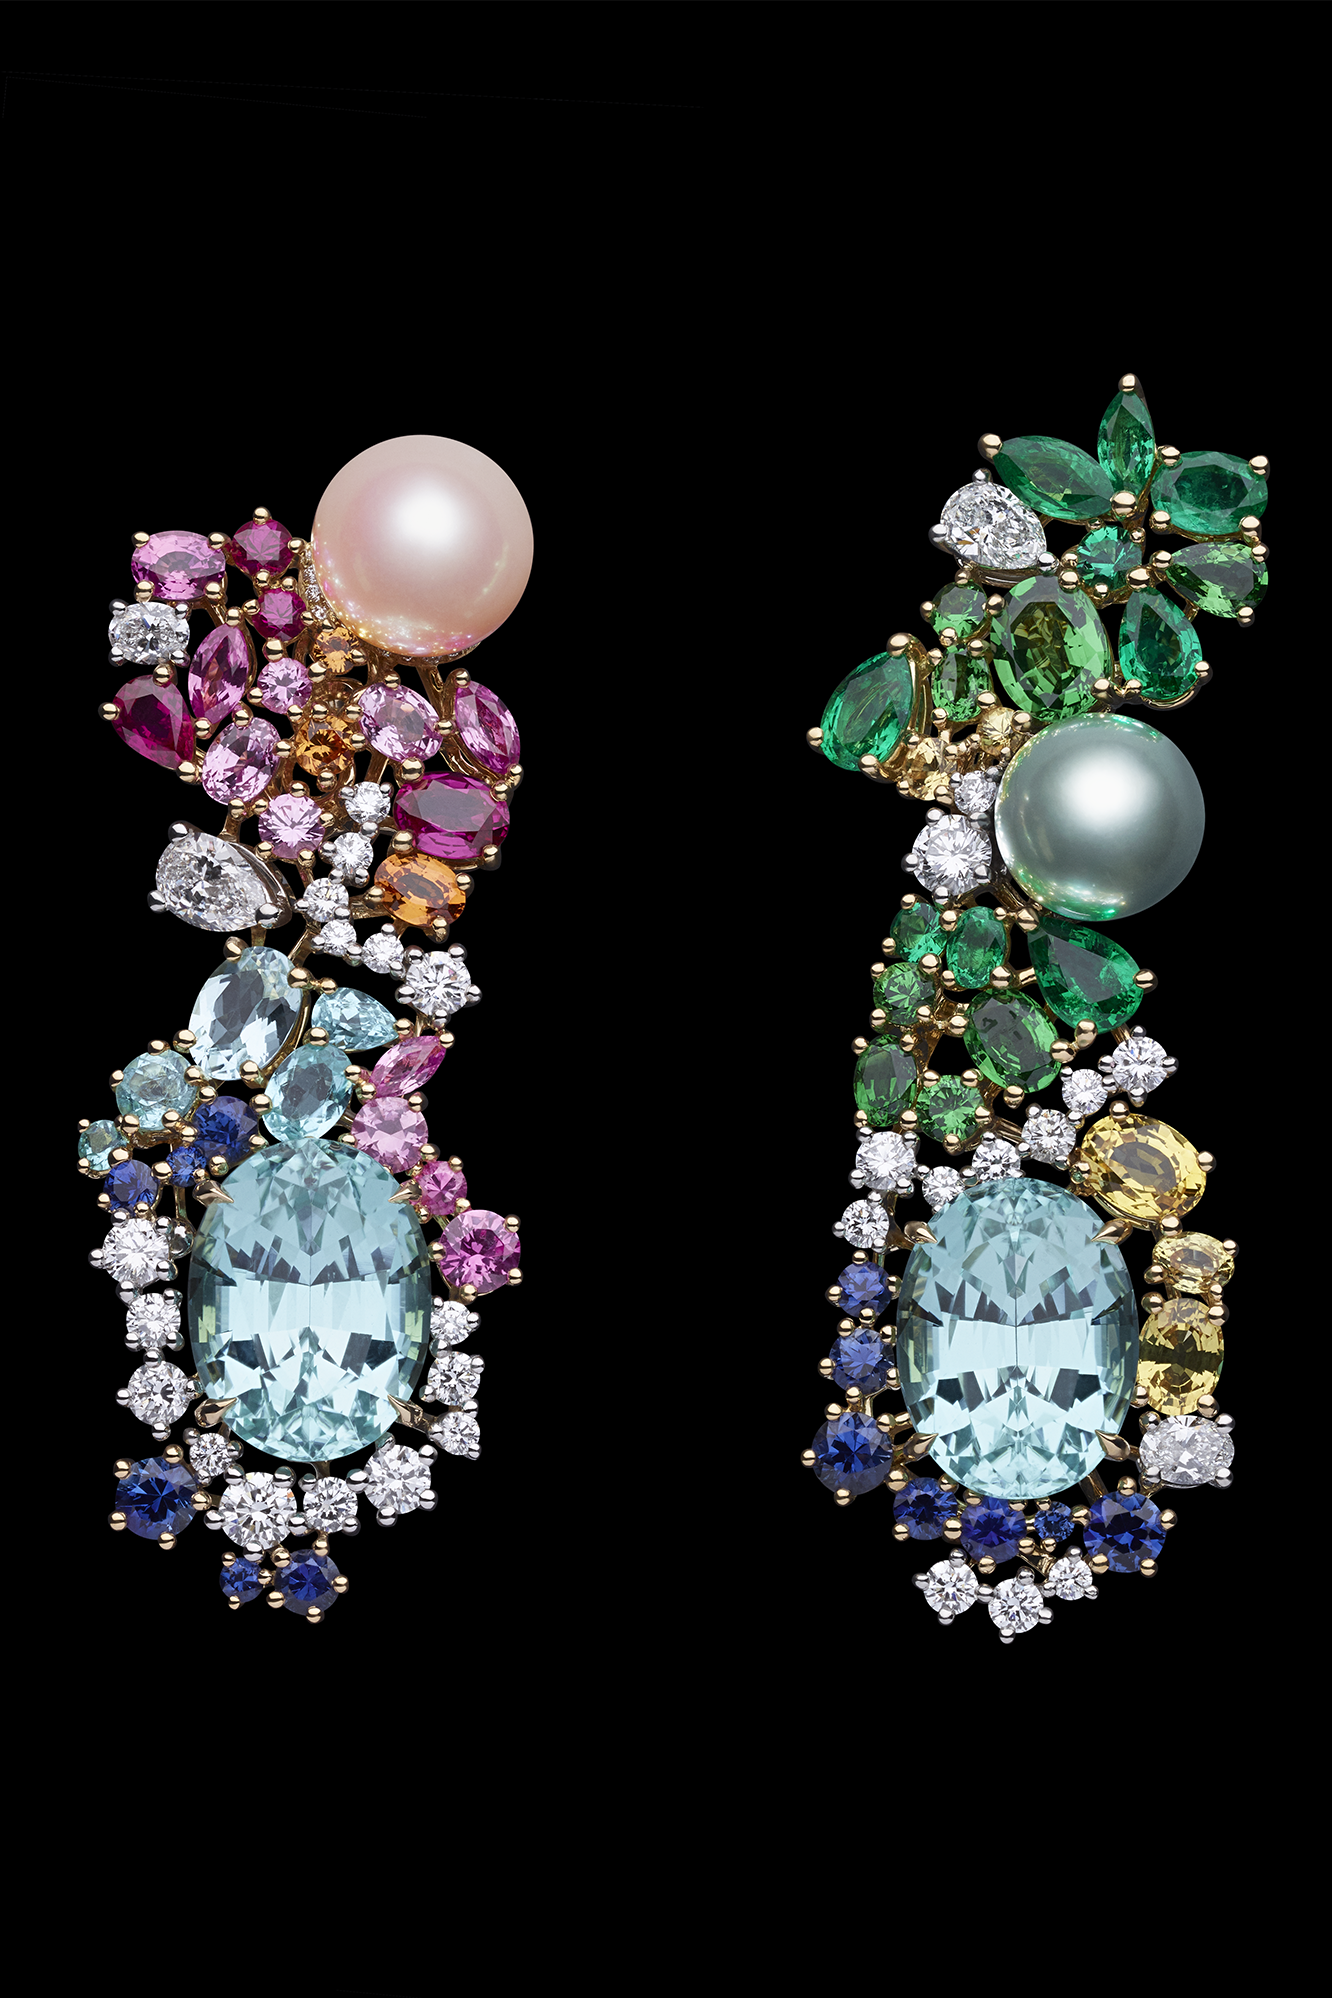 جواهرات سنگی با طرح رز که گل مورد علاقه ی کریستین دیور